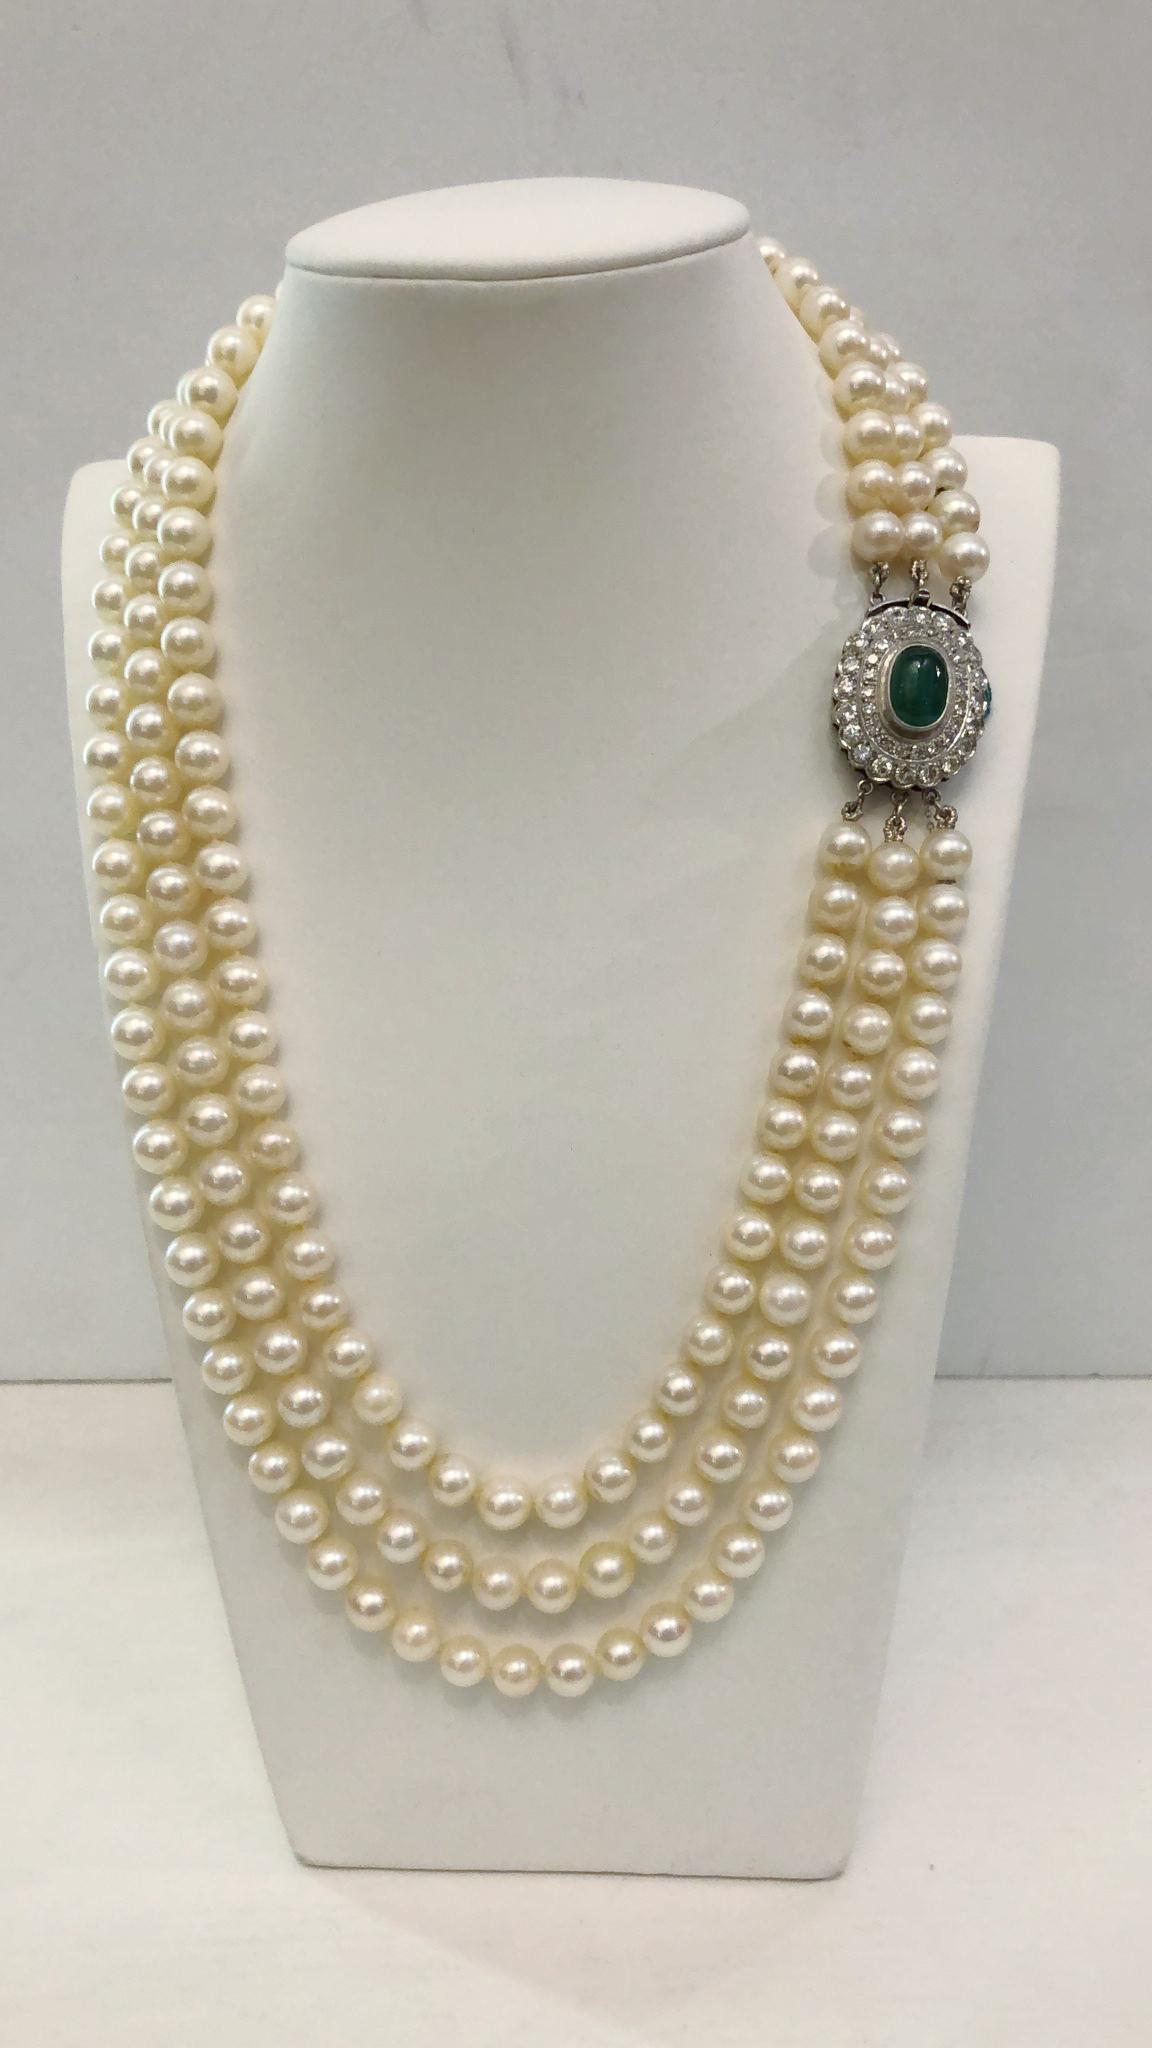 Collier italien vintage avec trois rangs de perles de 7,5/8 mm, la fermeture en or blanc 18 carats avec une émeraude cabouscon centrale de 3,00 carats et deux rangées de diamants brillants pour un total de 3,00 carats / Made in Italy 1950s
Longueur